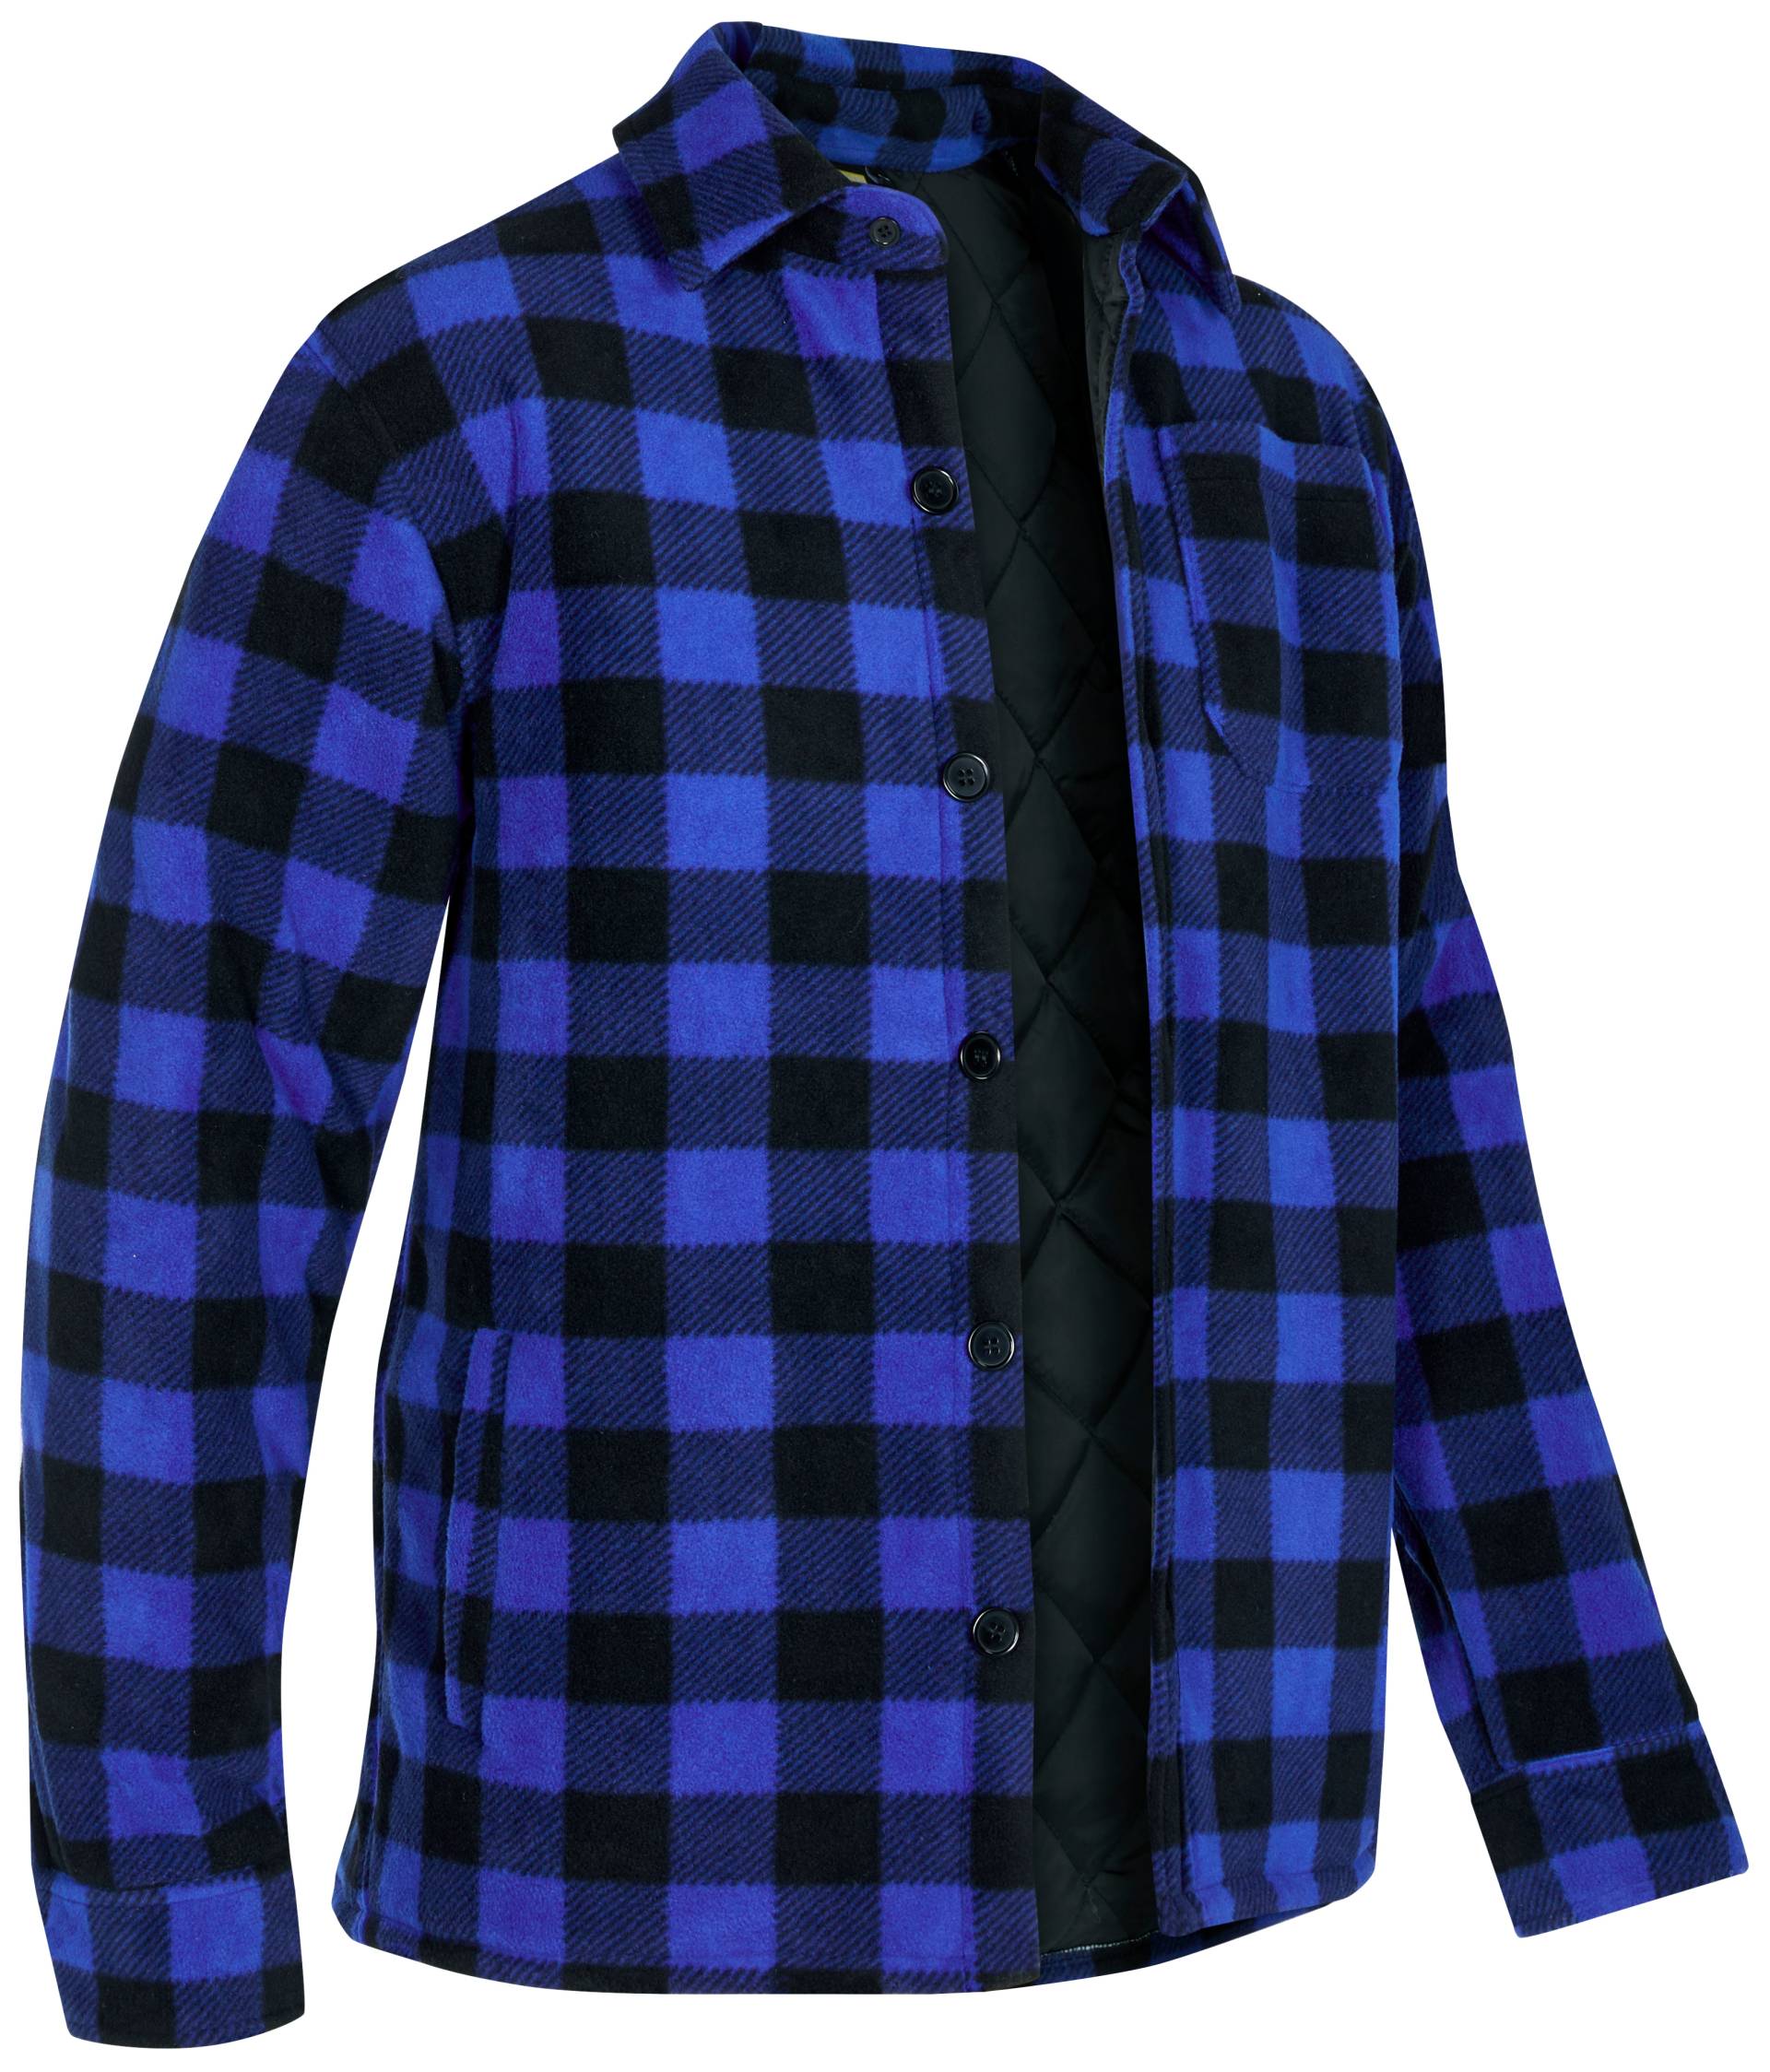 Northern Country Flanellhemd, (als Jacke offen oder Hemd zugeknöpft zu tragen) von Northern Country